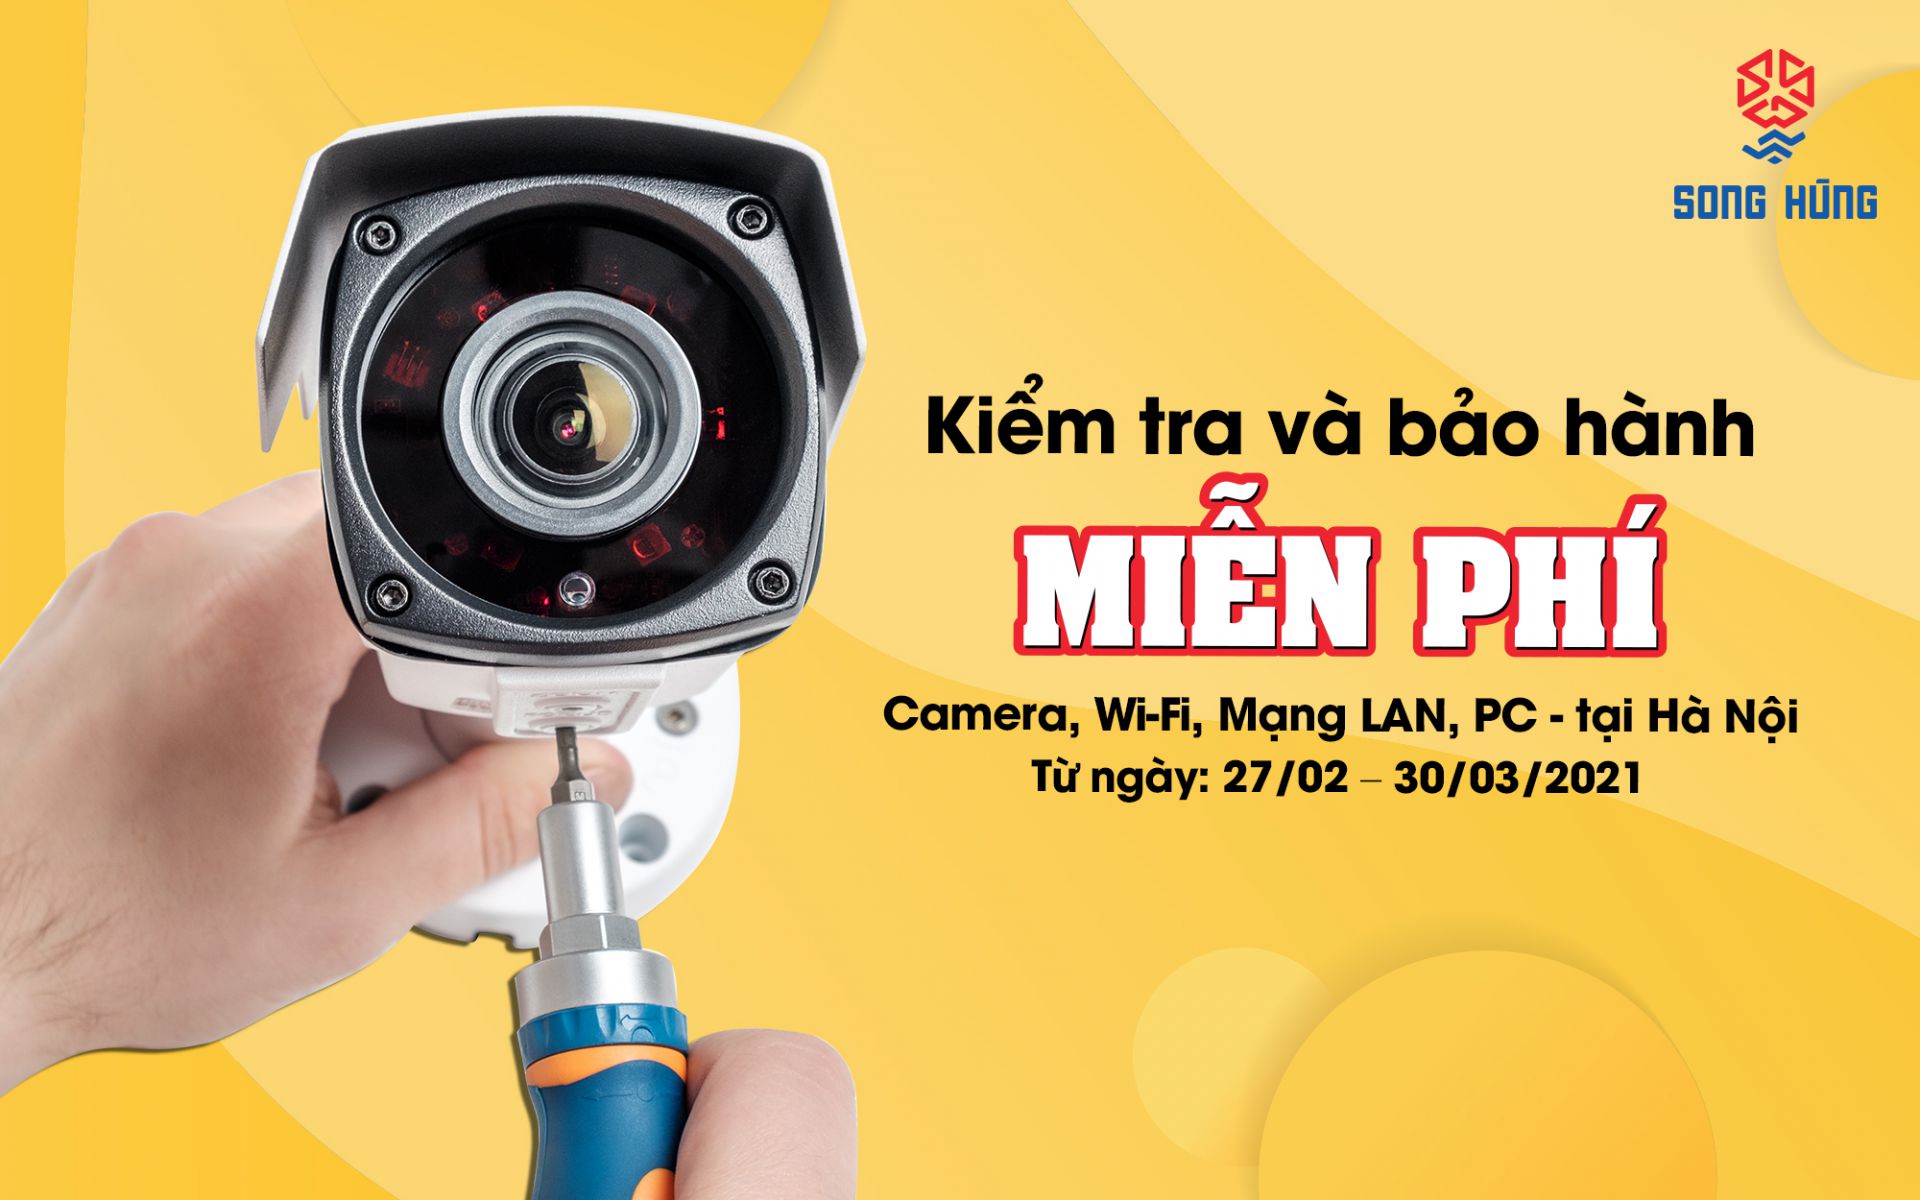 [Deal chất đầu năm] Kiểm tra và bảo hành miễn phí hệ thống Camera, Wifi, mạng LAN, PC tại Hà Nội